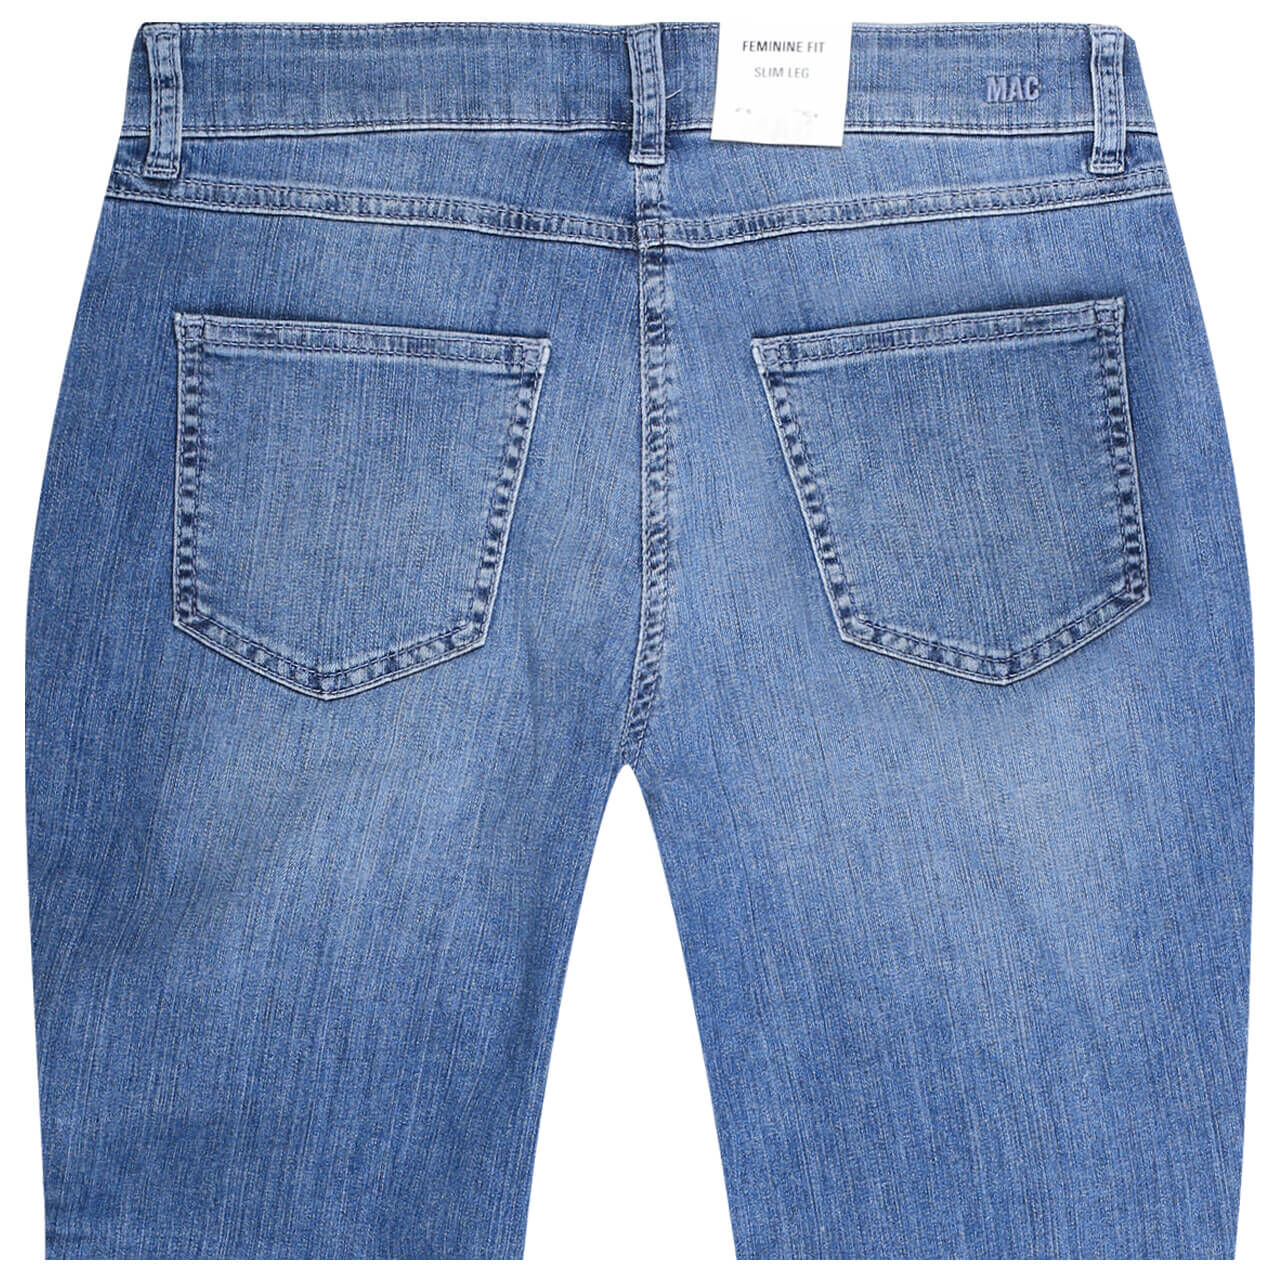 MAC Jeans Melanie 7/8 für Damen in Blau angewaschen, FarbNr.: D531